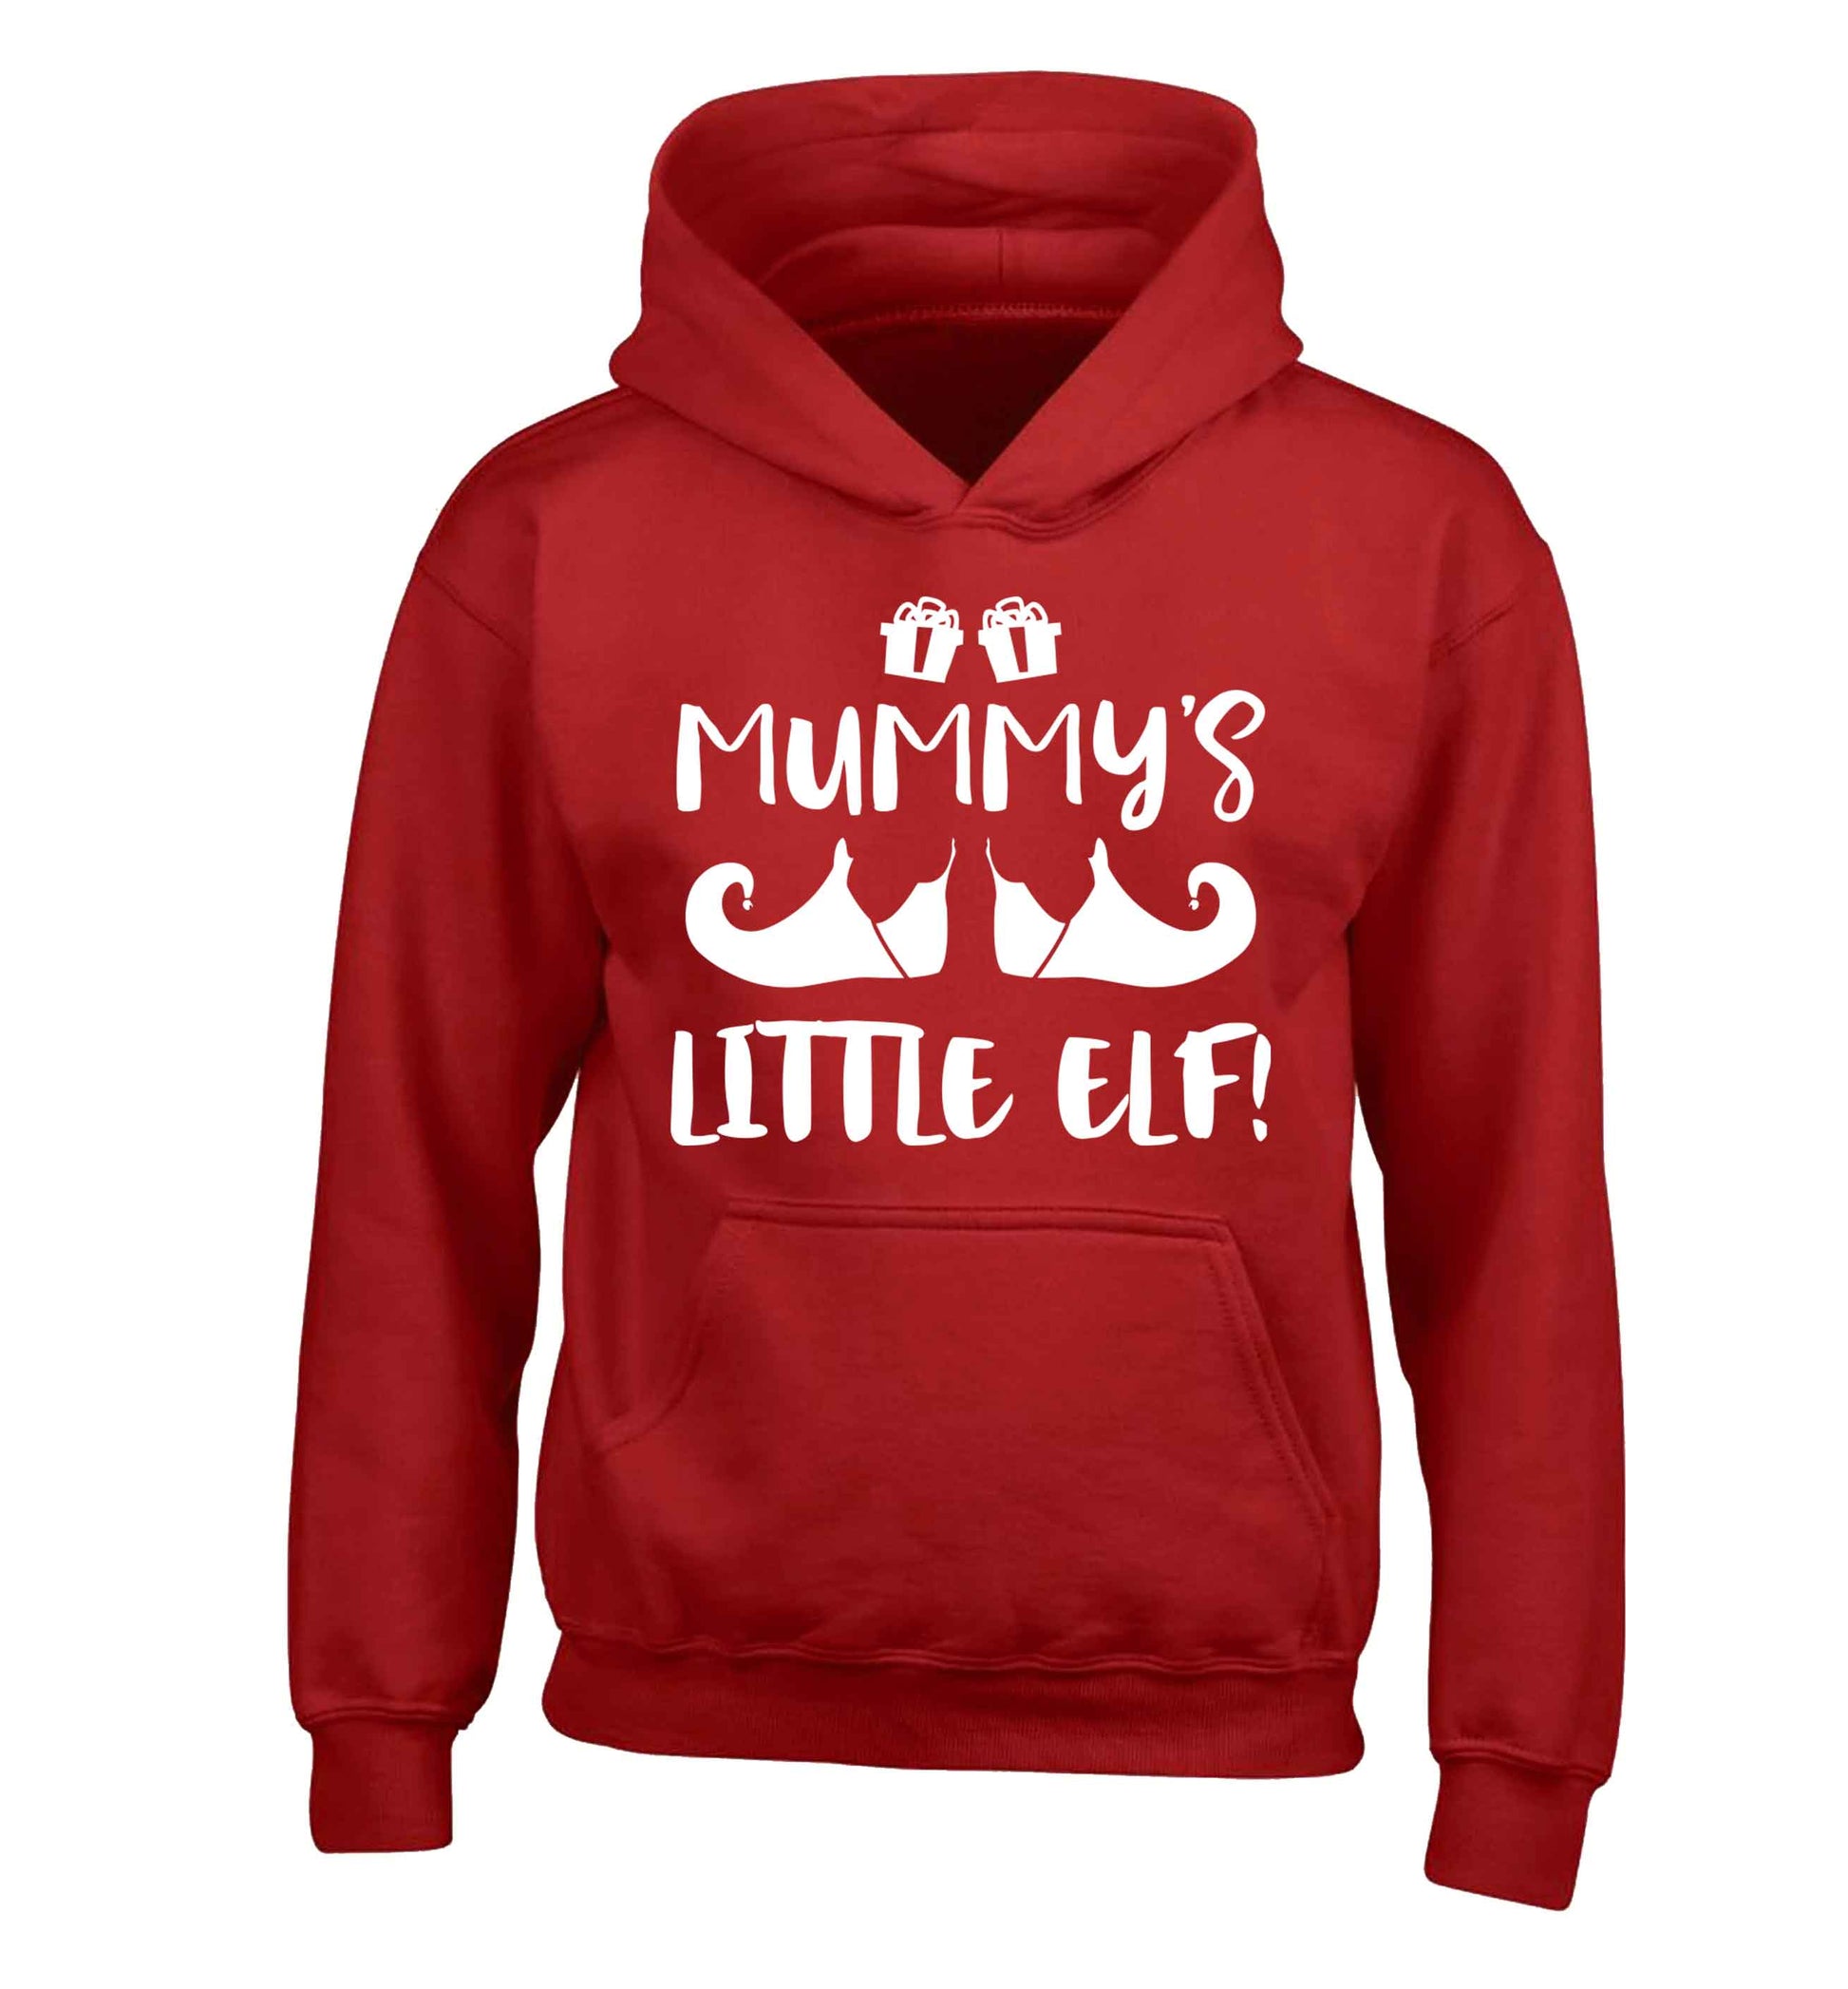 Mummy's little elf children's red hoodie 12-13 Years